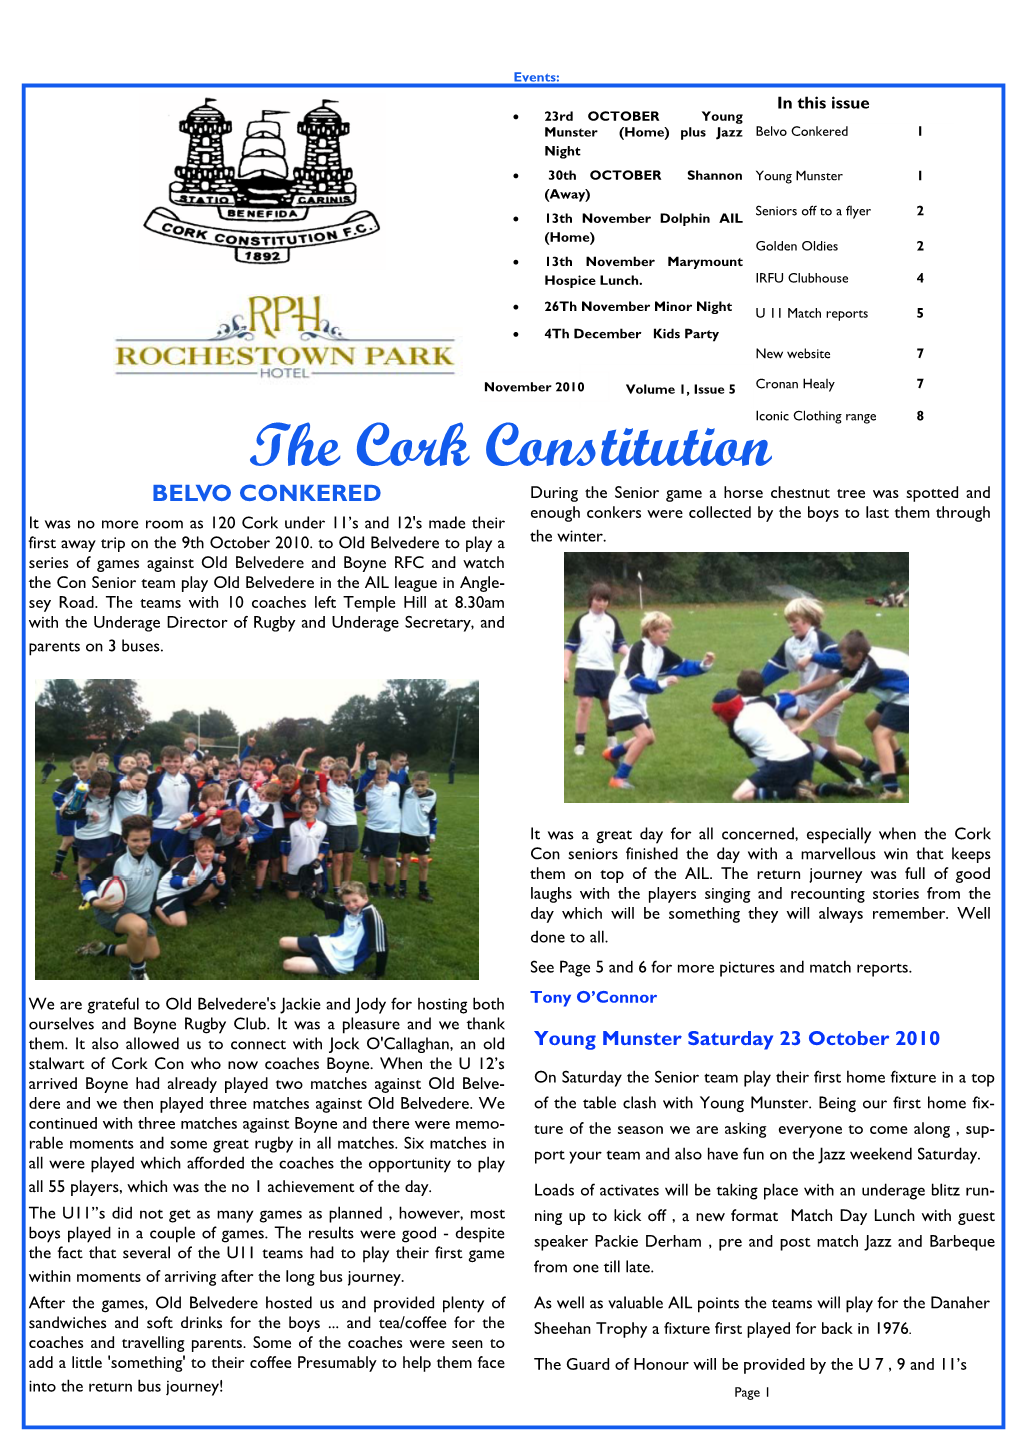 CCFC Nov 2010 Ezine Issue 5